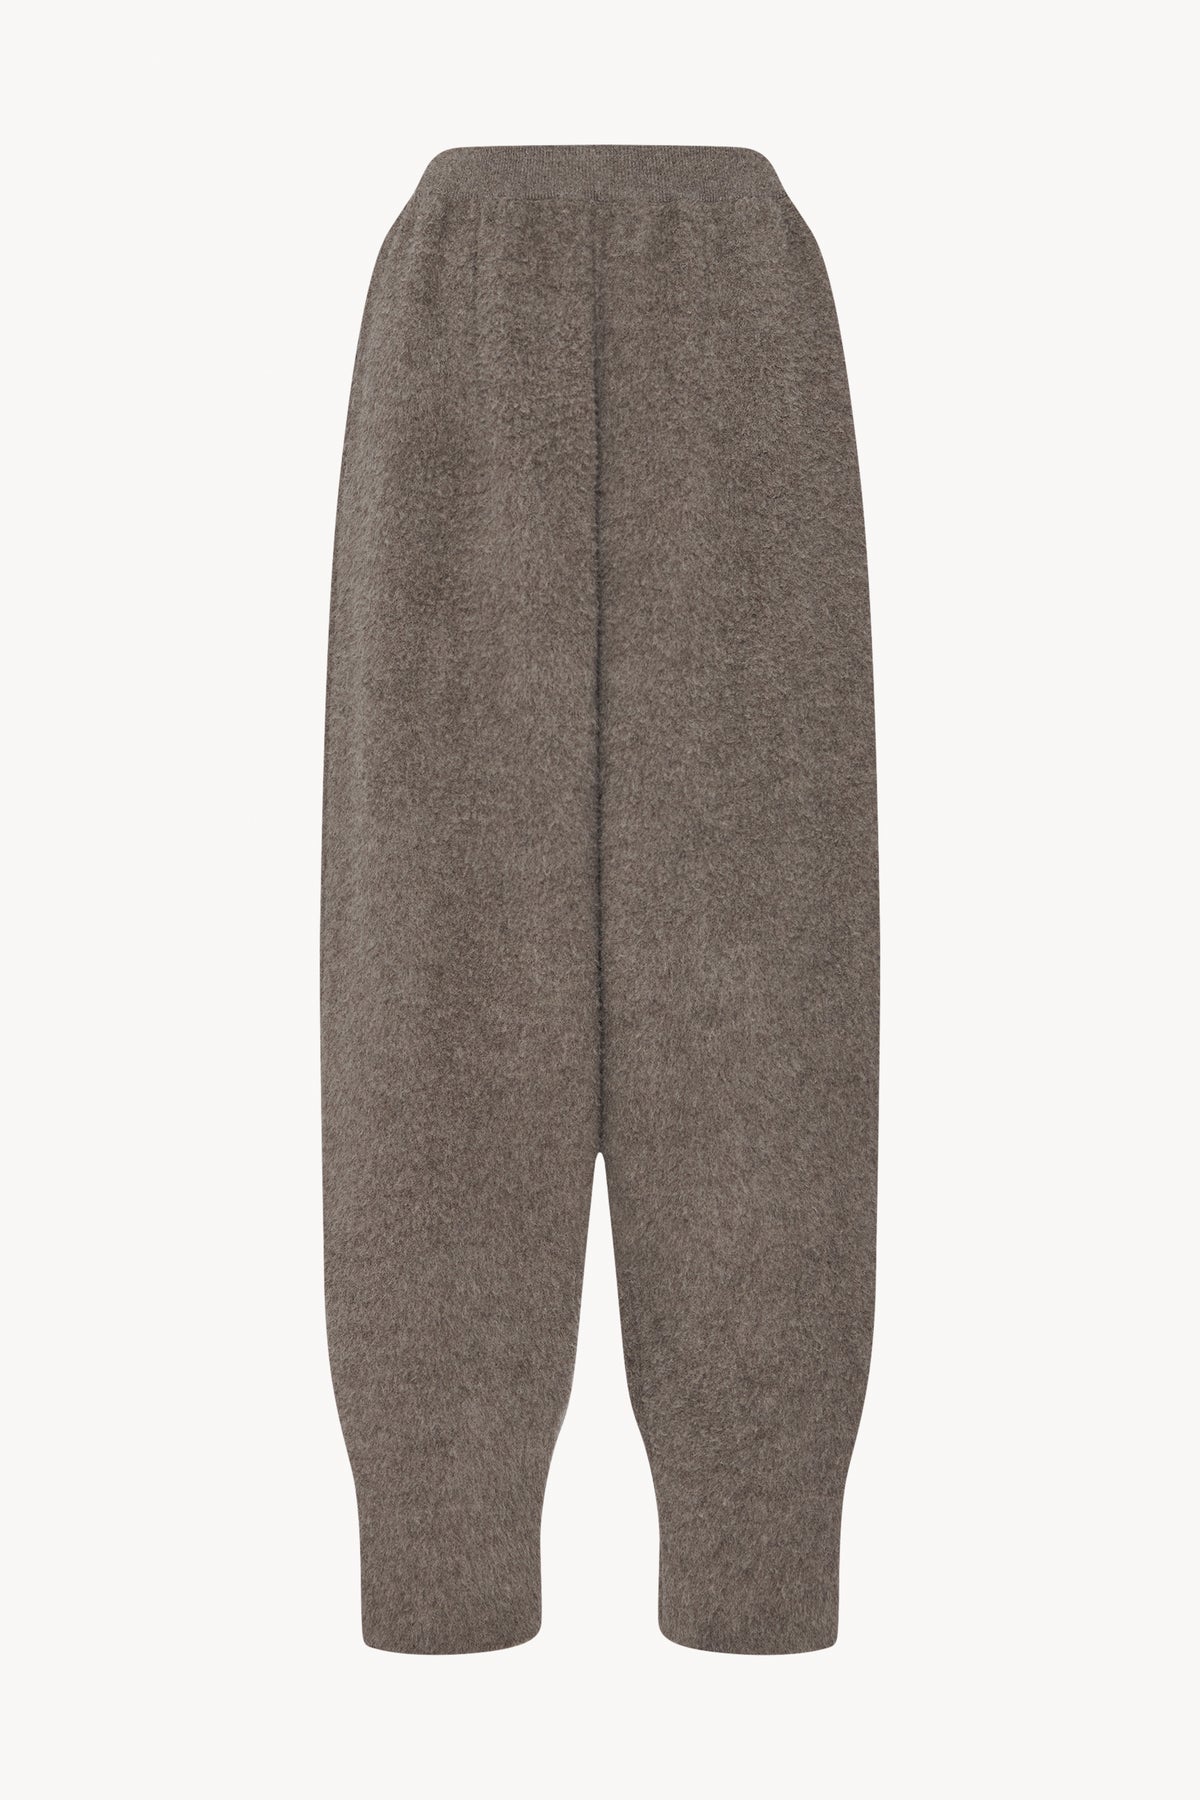 Ednah Pants Grey in Merino Wool – The Row